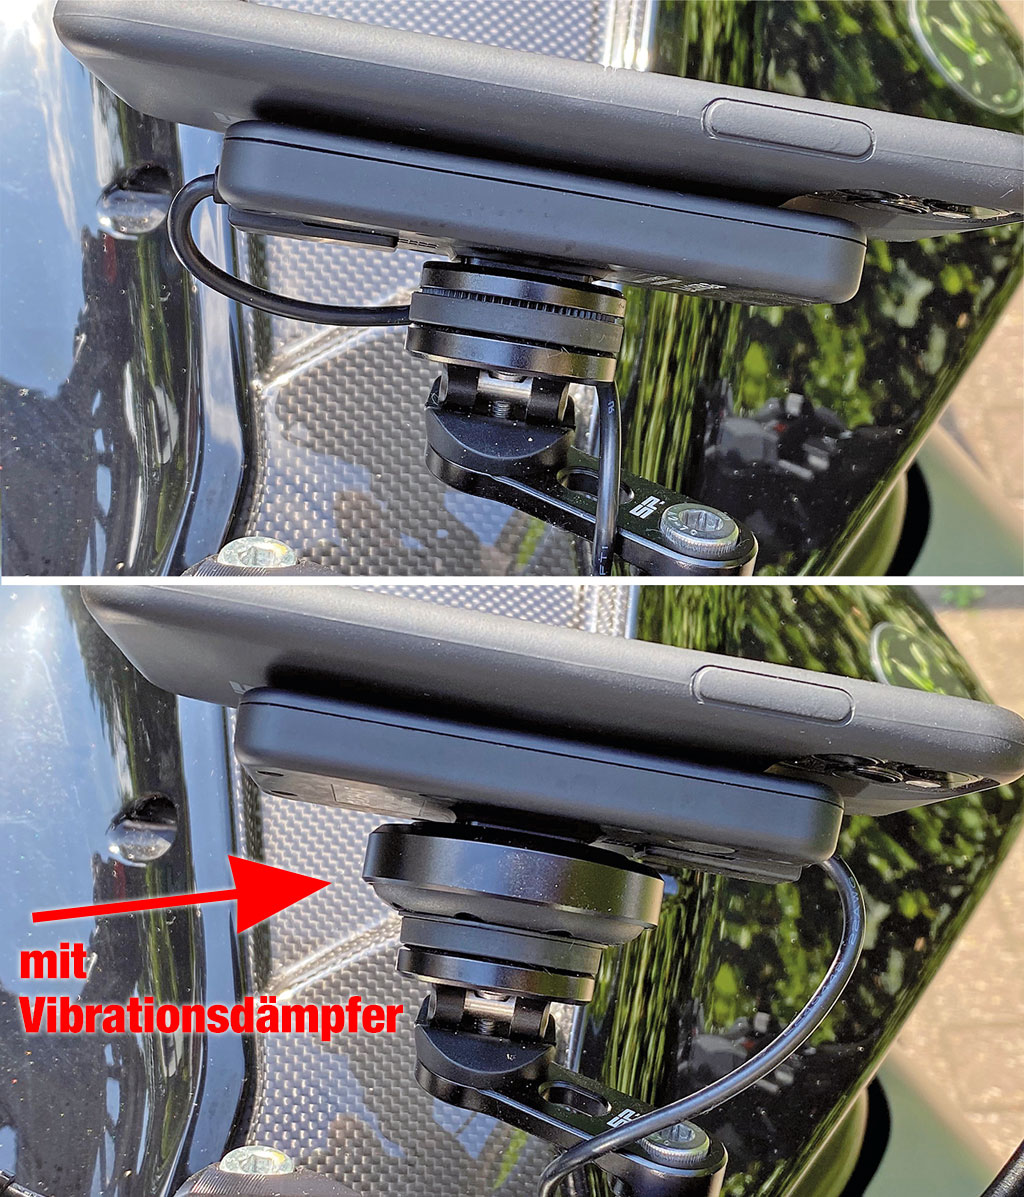 Vergleich - SP Connect Halterung mit und ohne Anti Vibration Module 